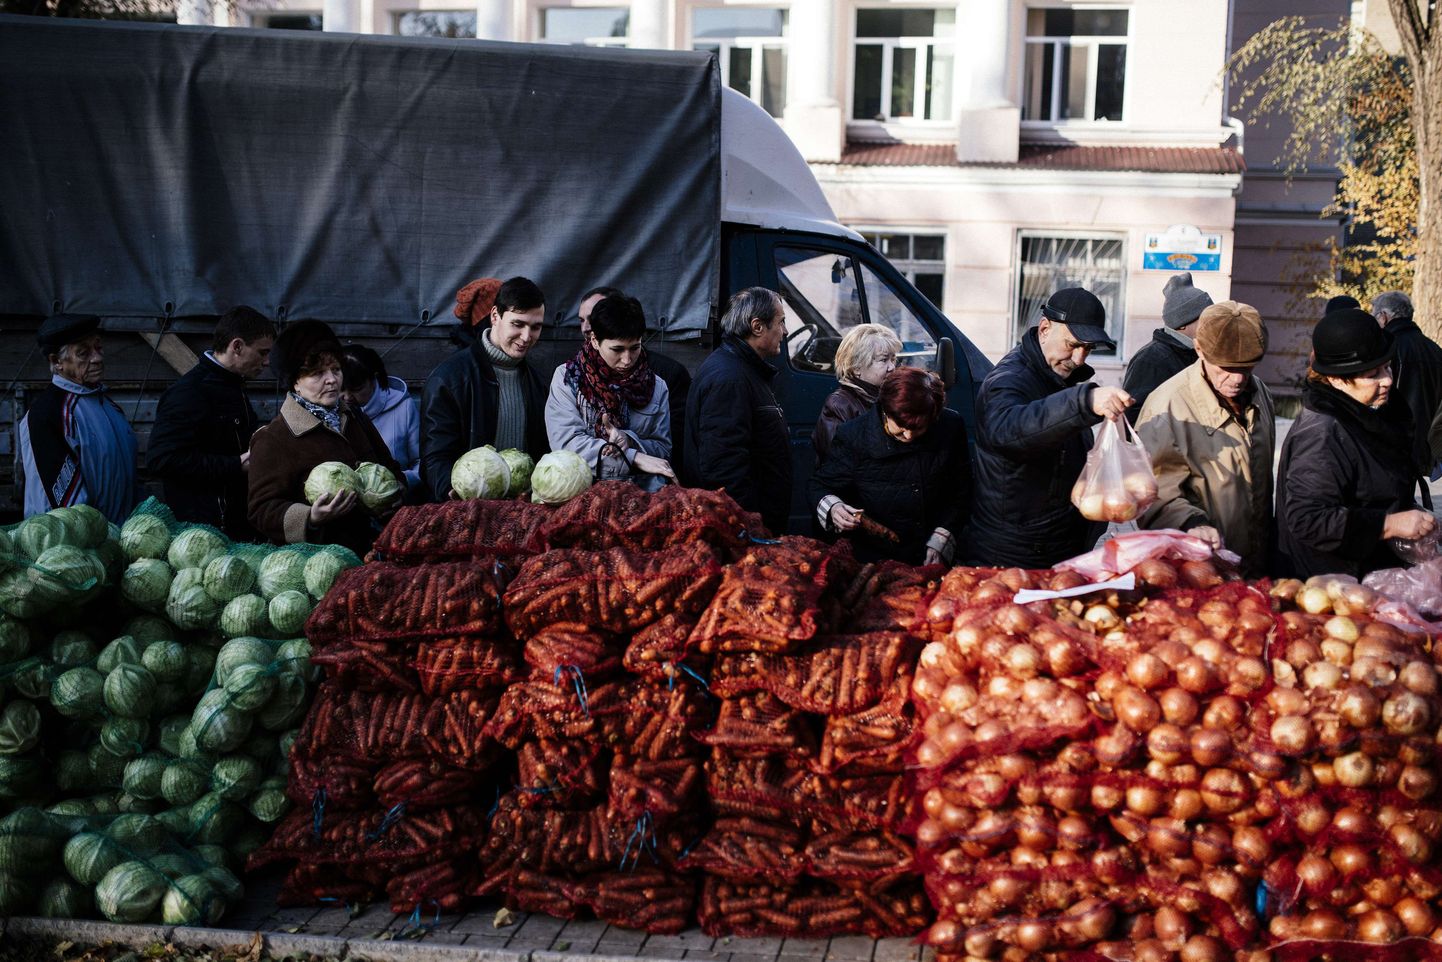 Donetskis võtsid inimesed valimisjaoskonna ees järjekorda, et osta odavaid juur- ja köögivilju.